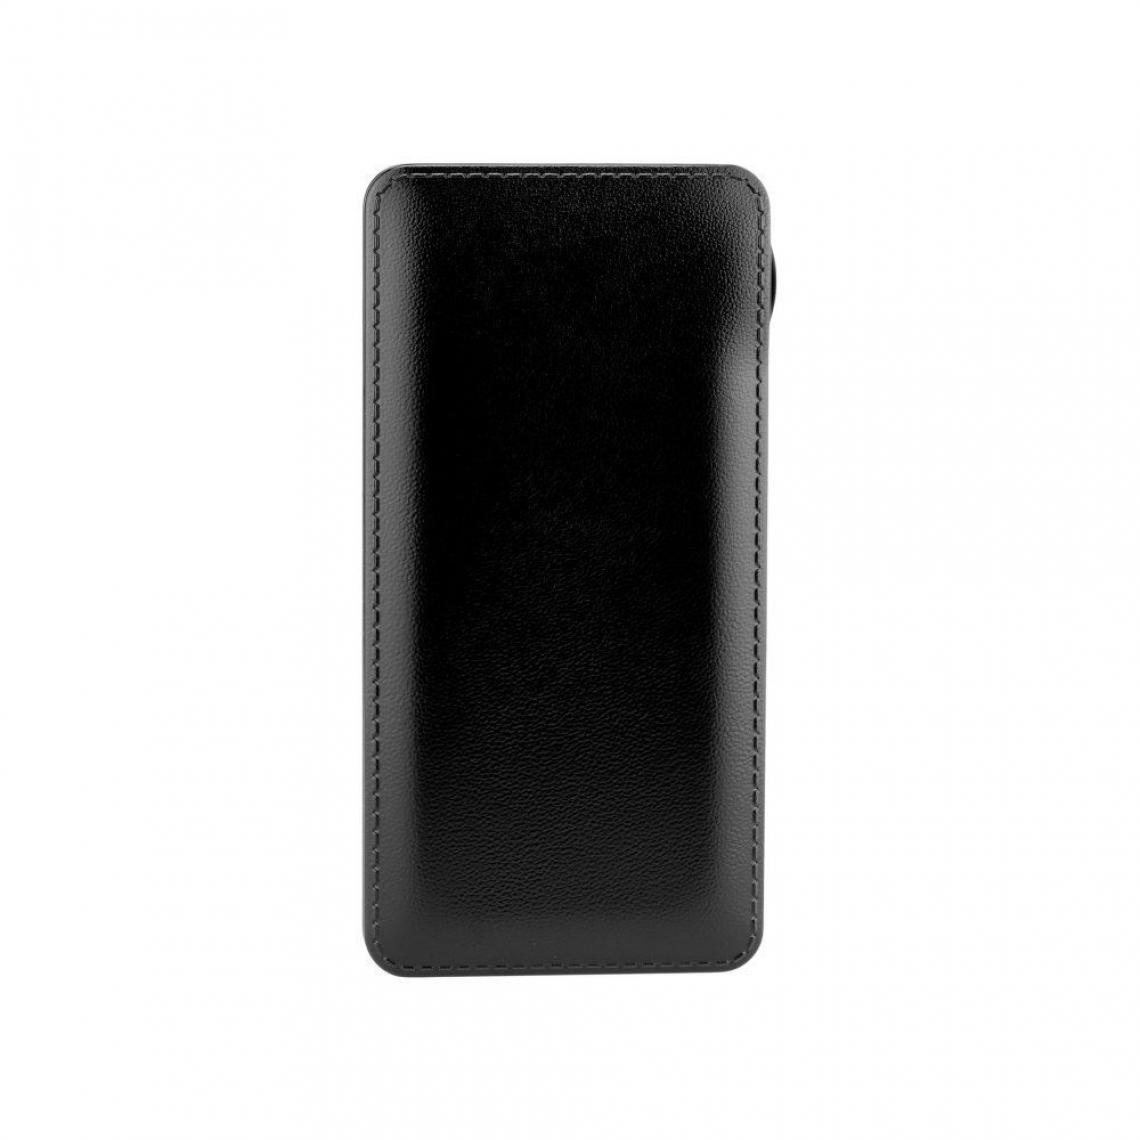 Ozzzo - Chargeur batterie externe 10000mAh powerbank ozzzo noir pour UMiDIGI A7S - Autres accessoires smartphone